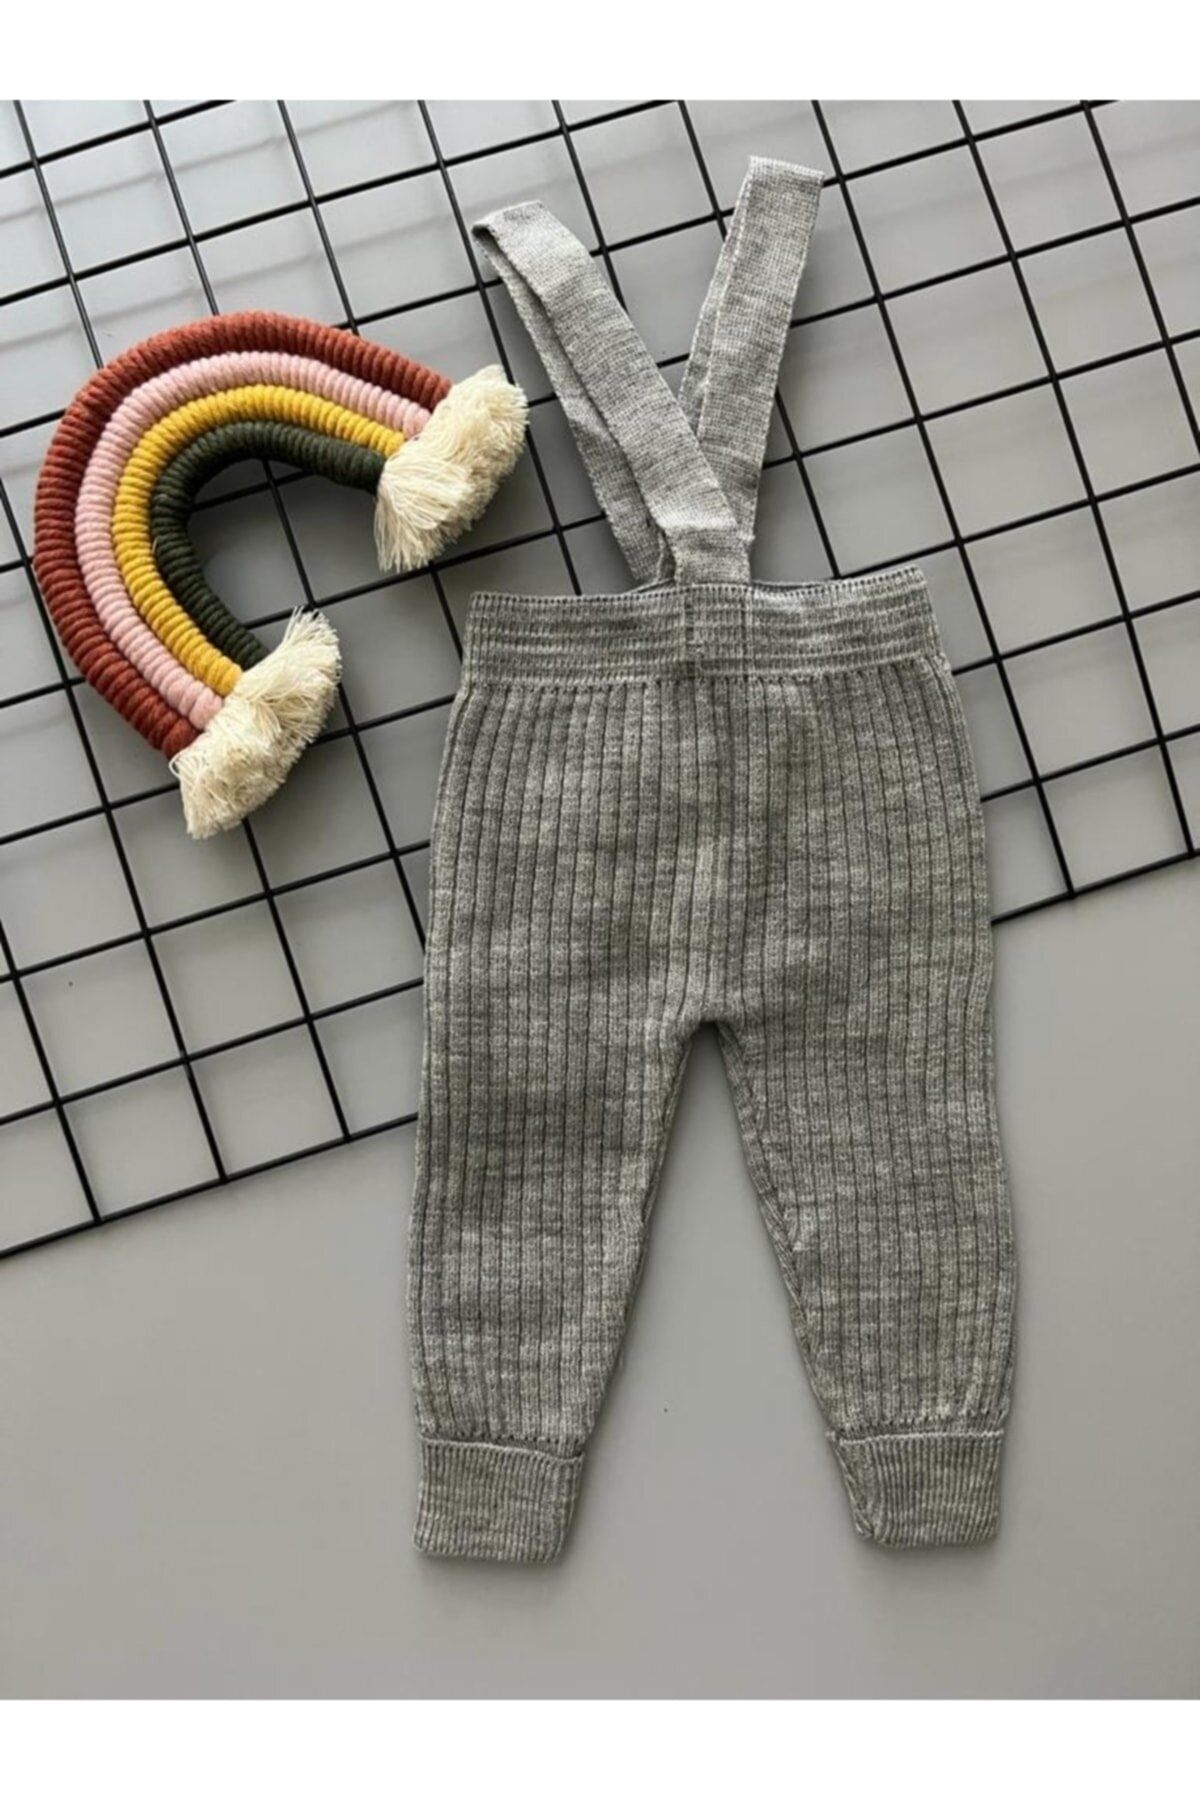 Dastini Unısex Askılı Bebek Triko Taytı